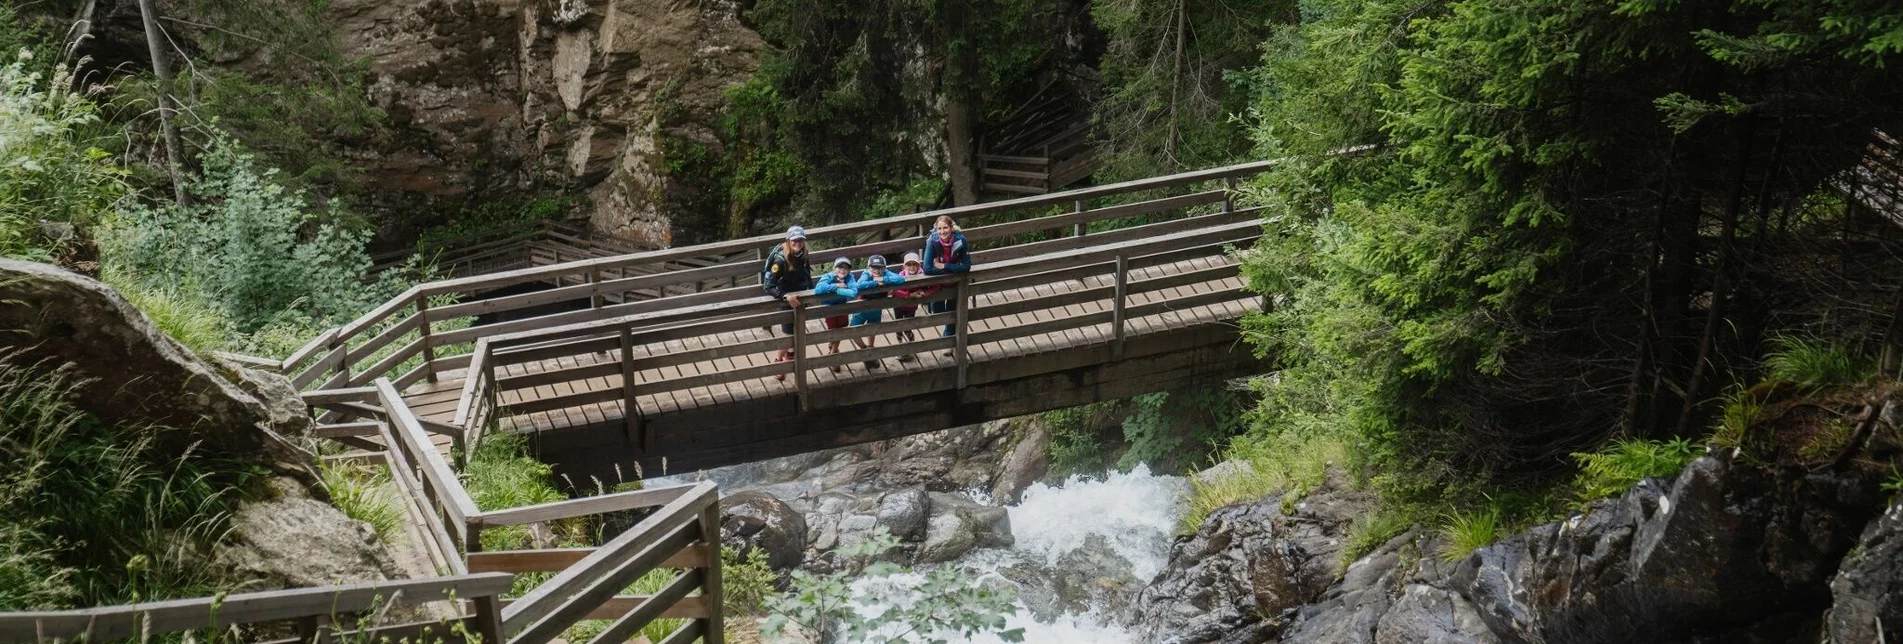 Hiking route Krakaudorf - Trübeck- Günster Wasserfall - Touren-Impression #1 | © Tourismusverband Region Murau